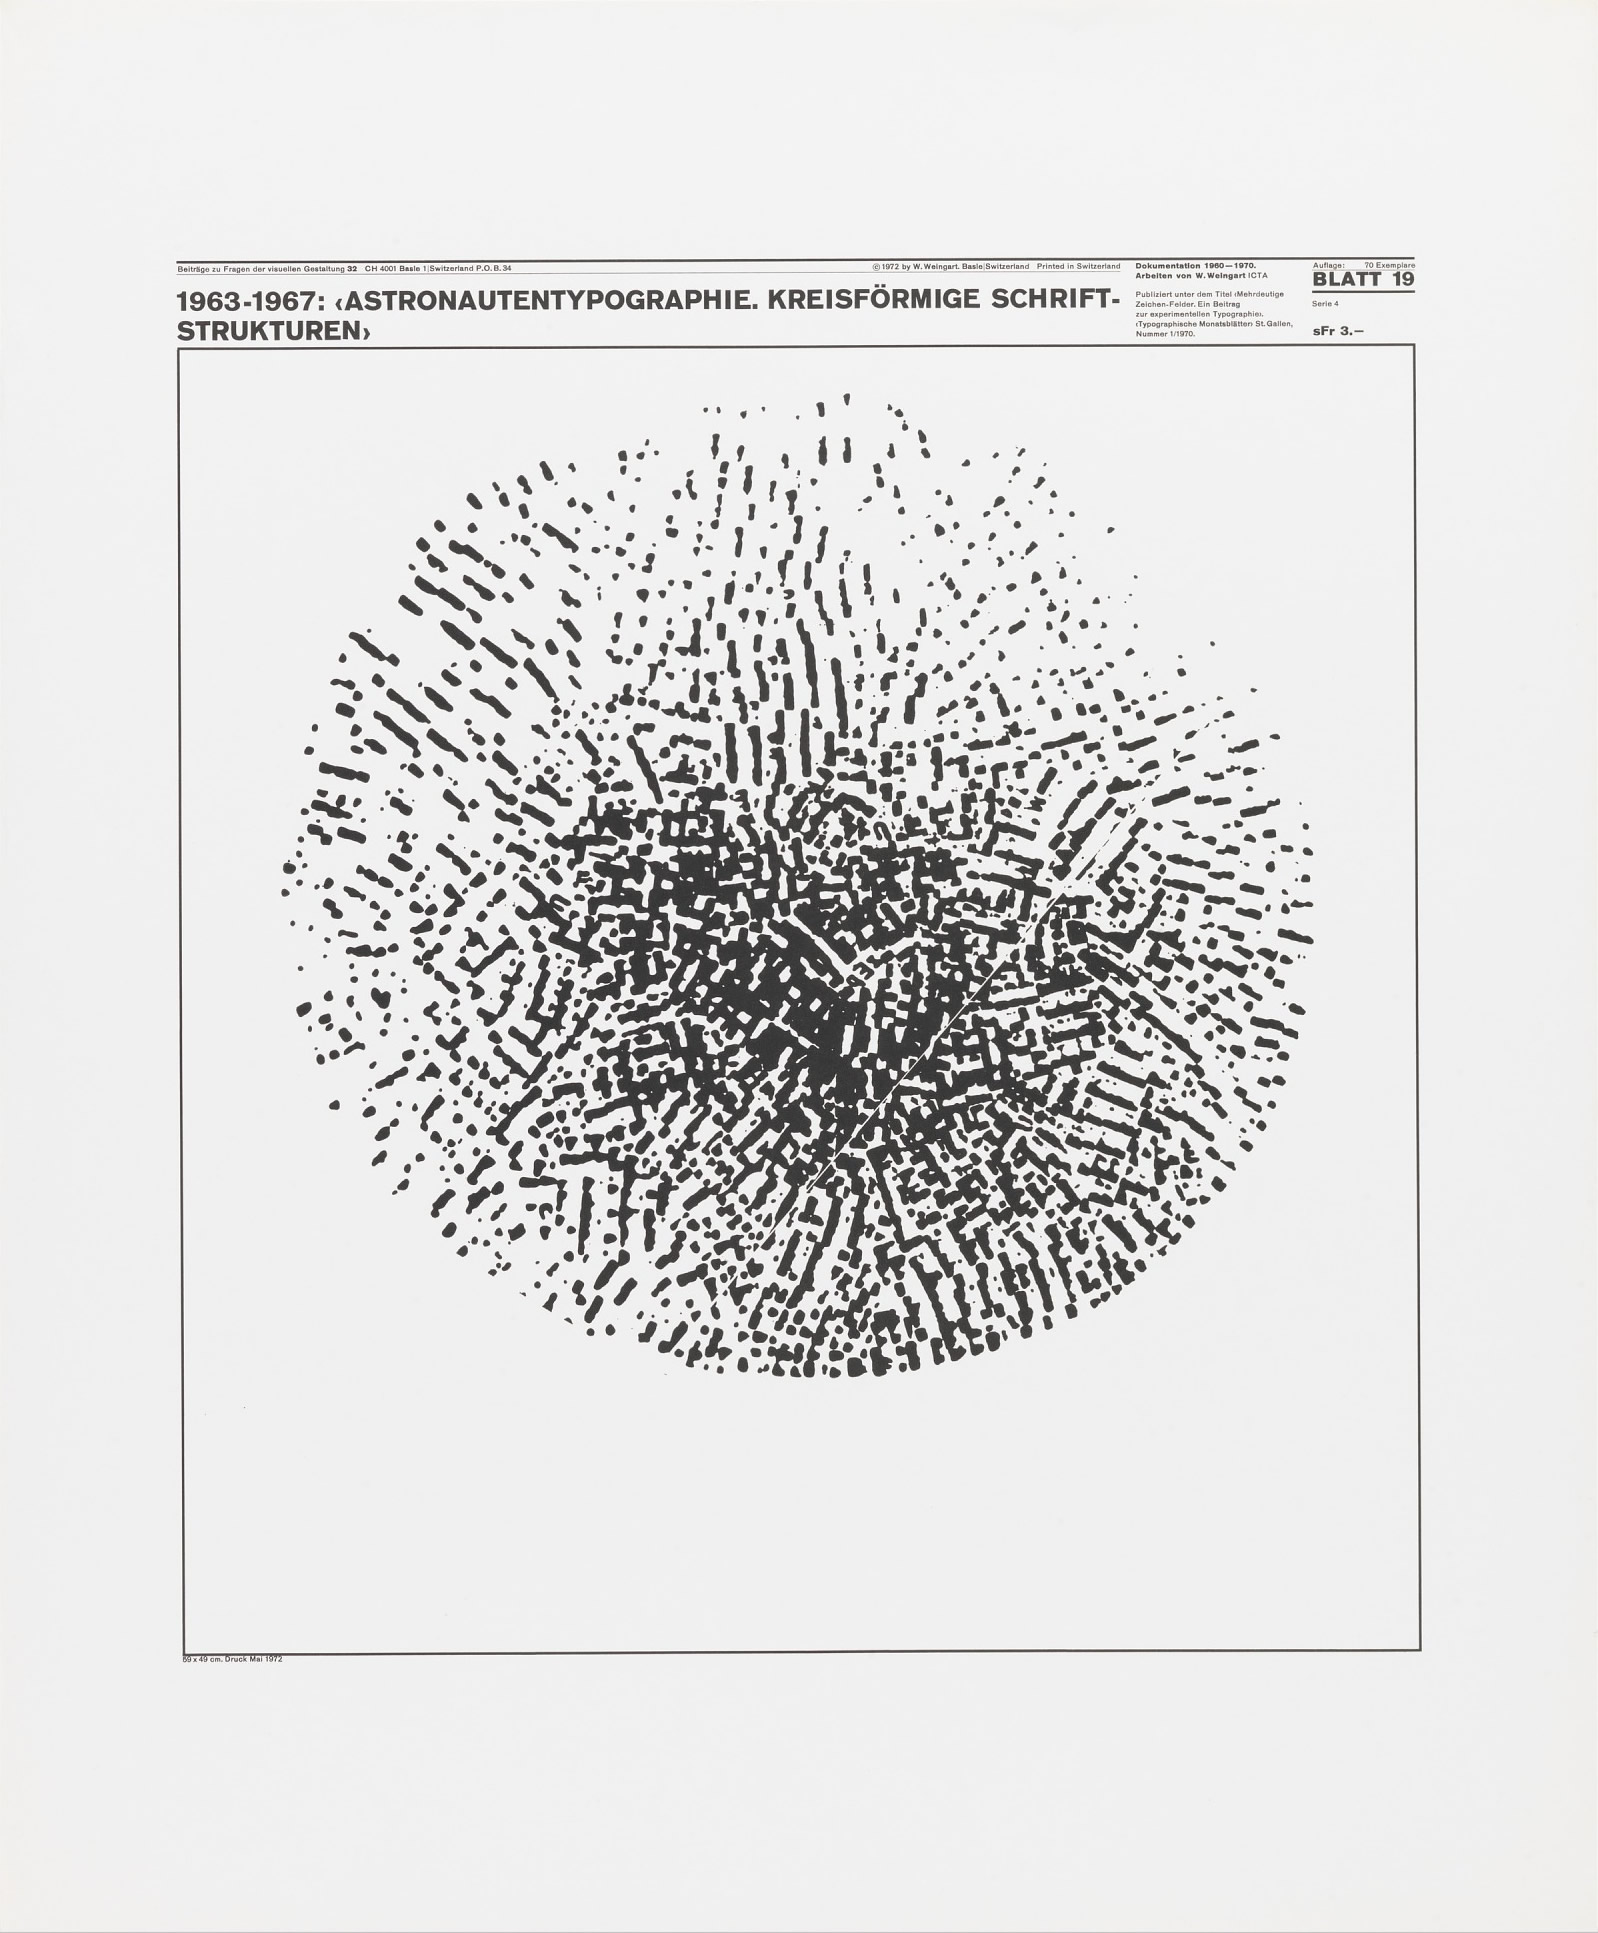 Wolfgang Weingart: Beiträge zu Fragen der visuellen Gestaltung 32, Blatt 19 from the portfolio Dokumentation 1960—1970, Arbeiten von W. Weingart, Designed 1963-67. Lithograph. (58.9 x 49 cm)